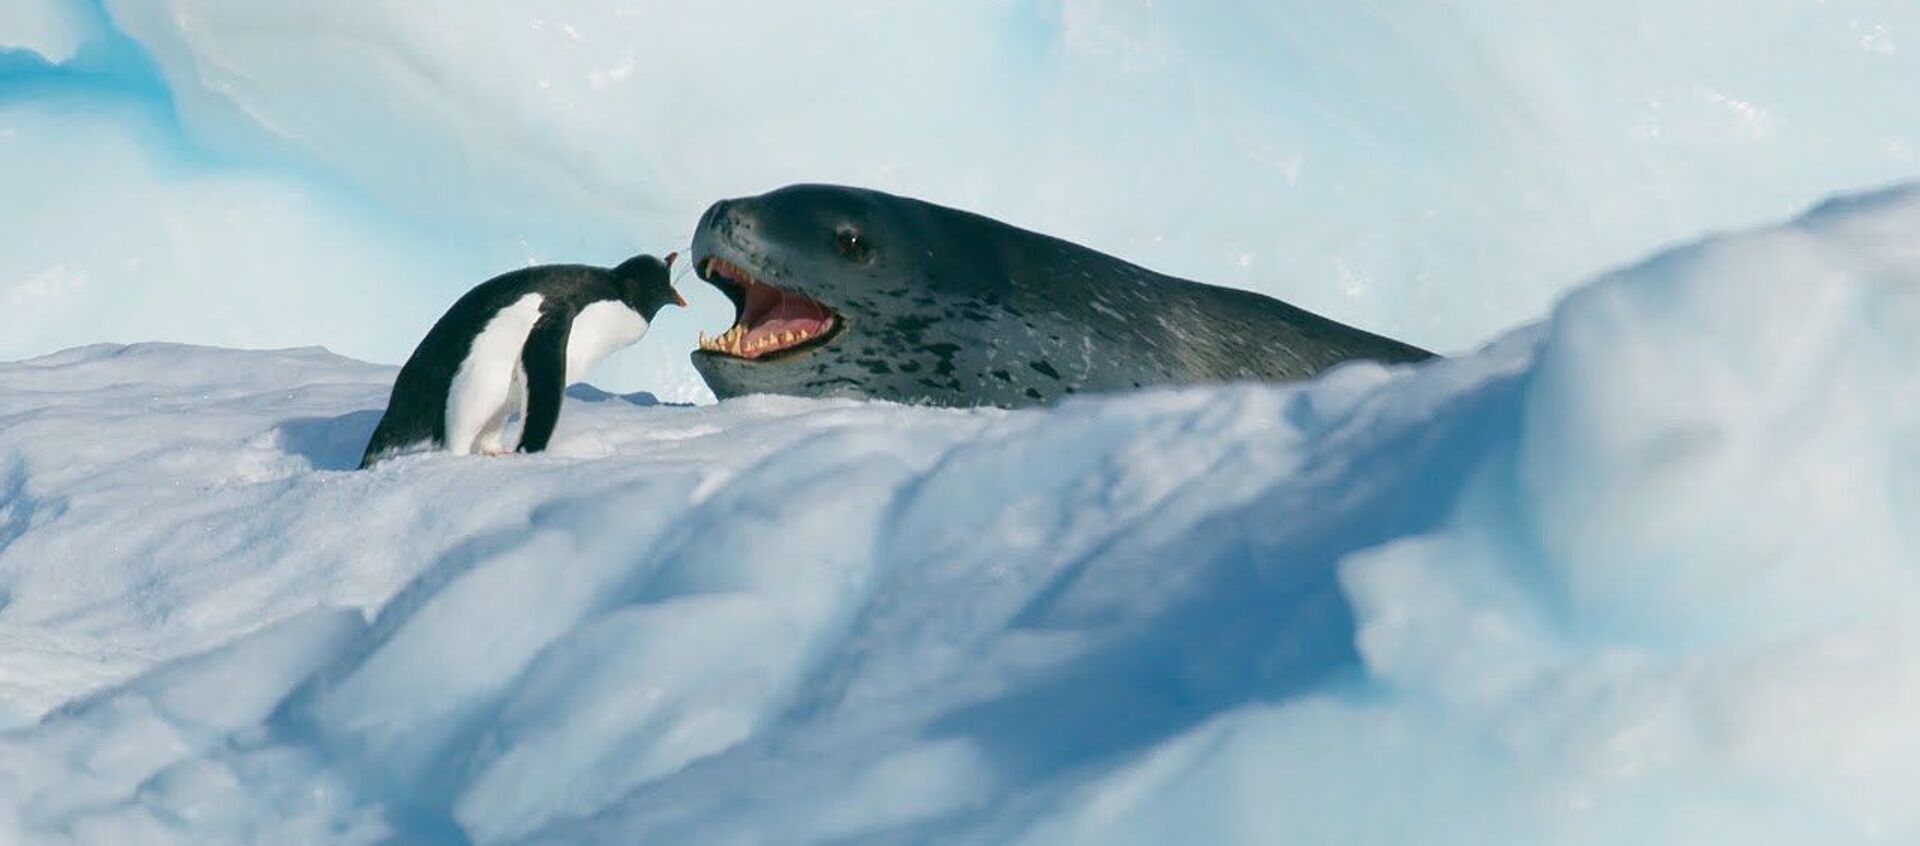 На волоске от смерти — видео захватывающей охоты морского леопарда на пингвинов - Sputnik Кыргызстан, 1920, 12.04.2021